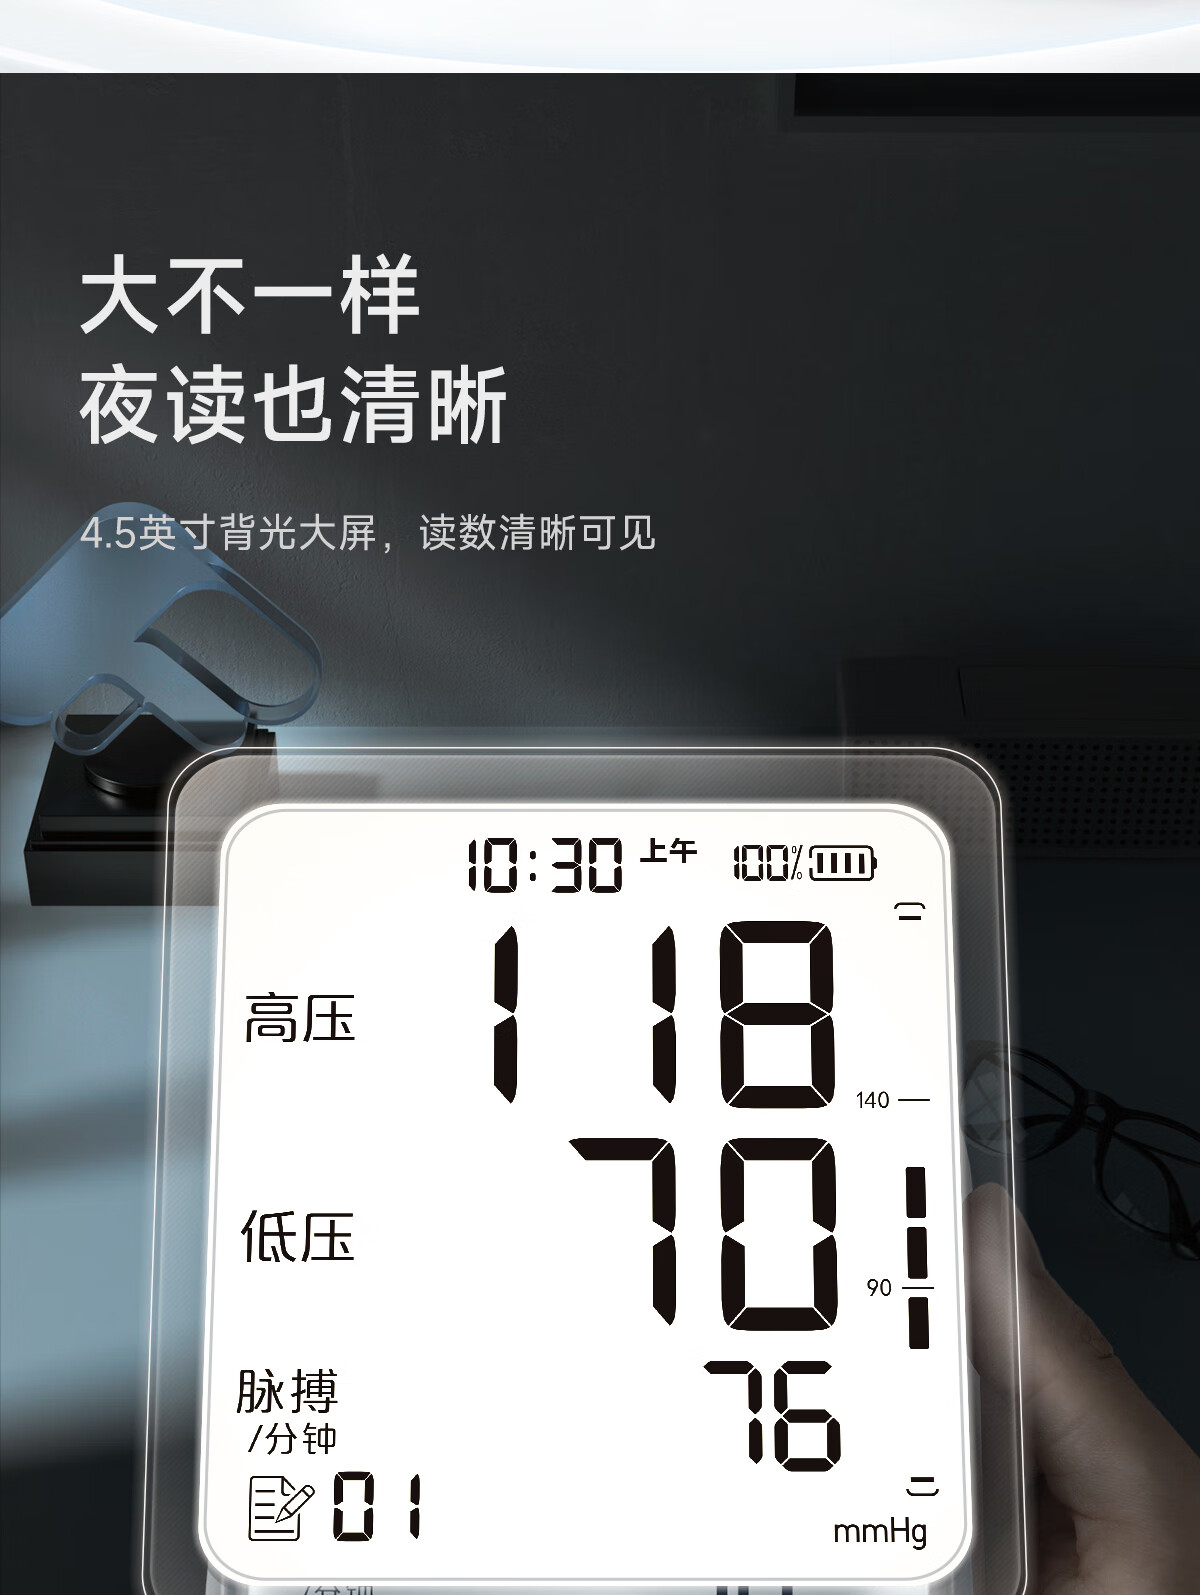 鱼跃电子血压计怎么样？YE666AR 语音背光量血压 国际认证充电款家用血压仪 上臂式测血压仪器